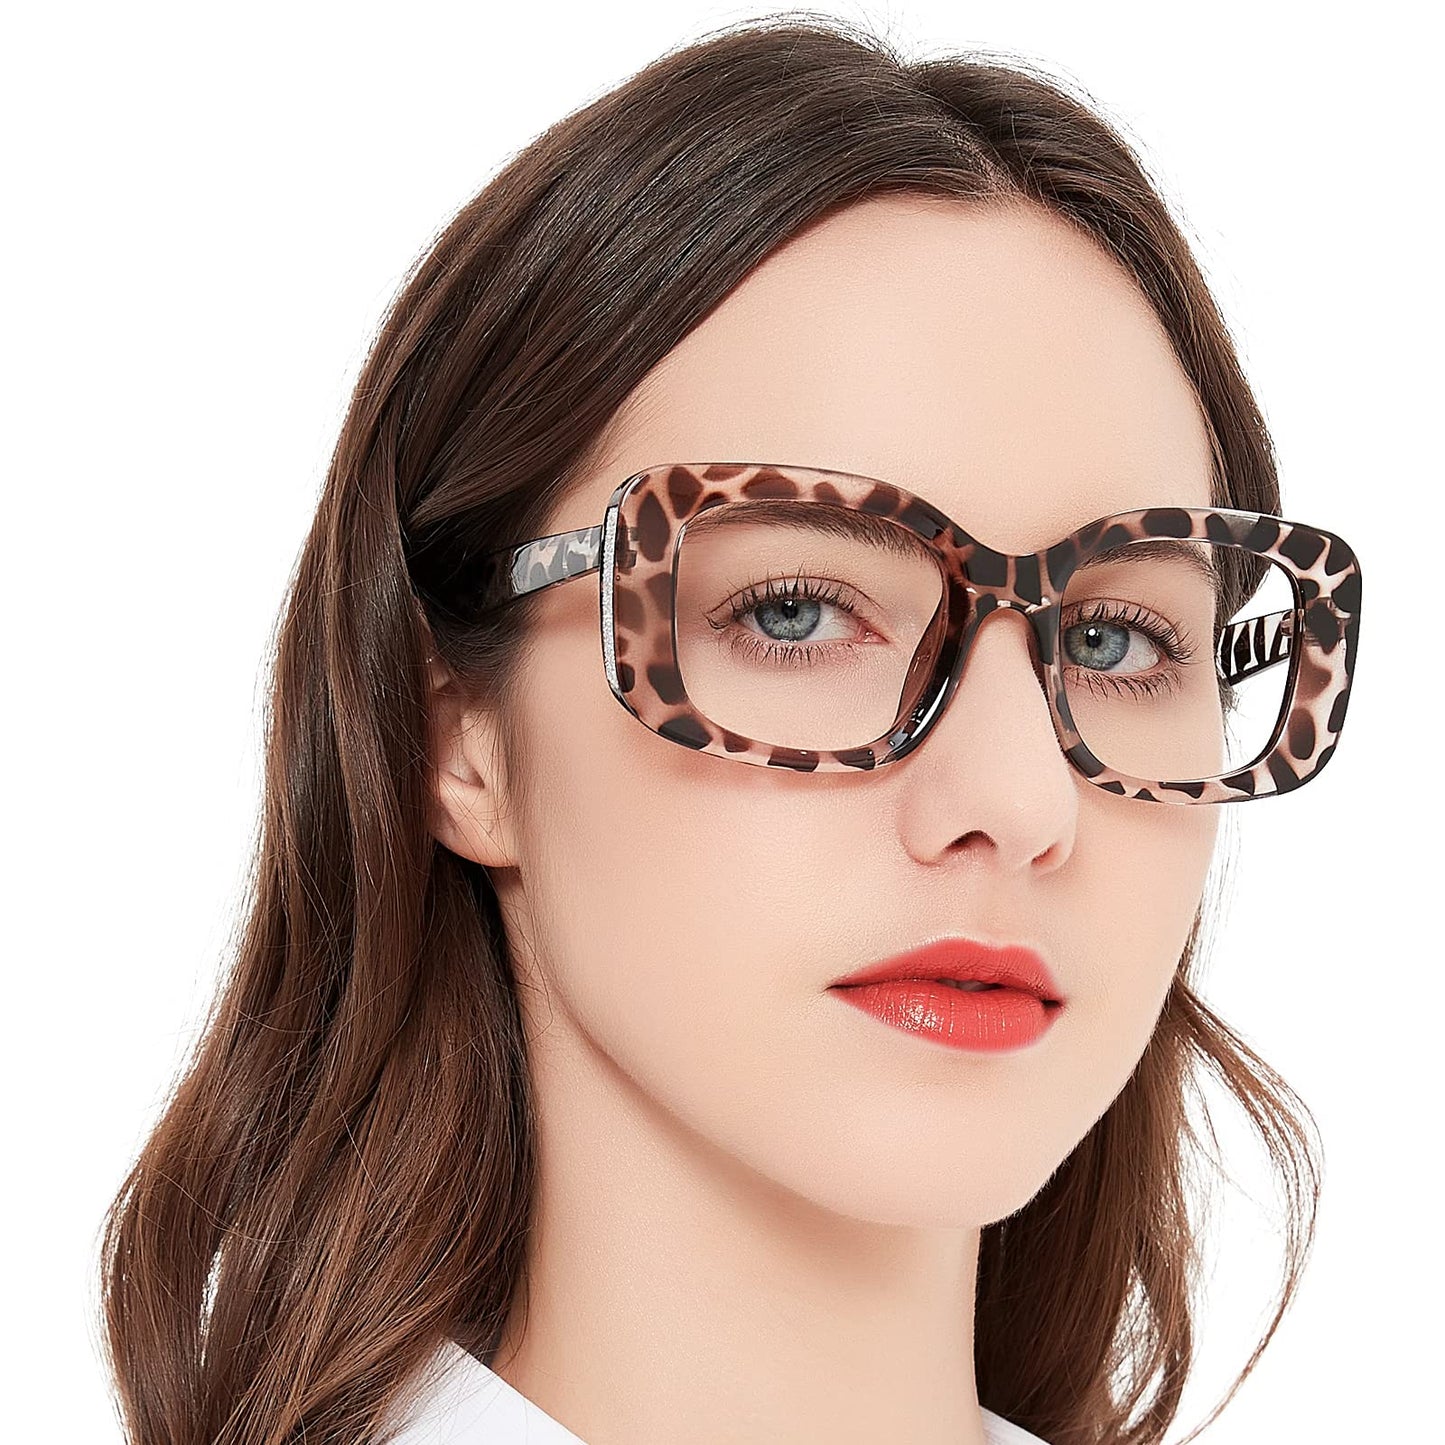 OCCI CHIARI Oversized Reading Glasses For Women Large Reader 1.0 1.5 2.0 2.5 3.0 3.5 4.0 5.0 6.0